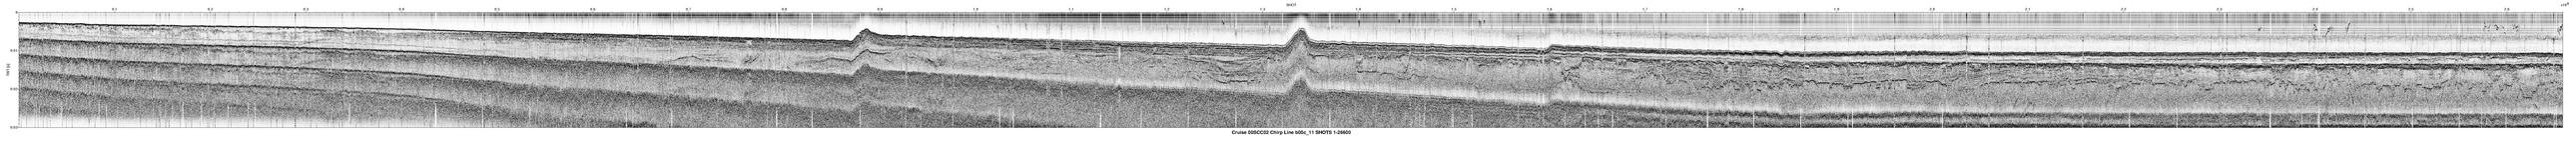 00SCC02 b00c_11 seismic profile image